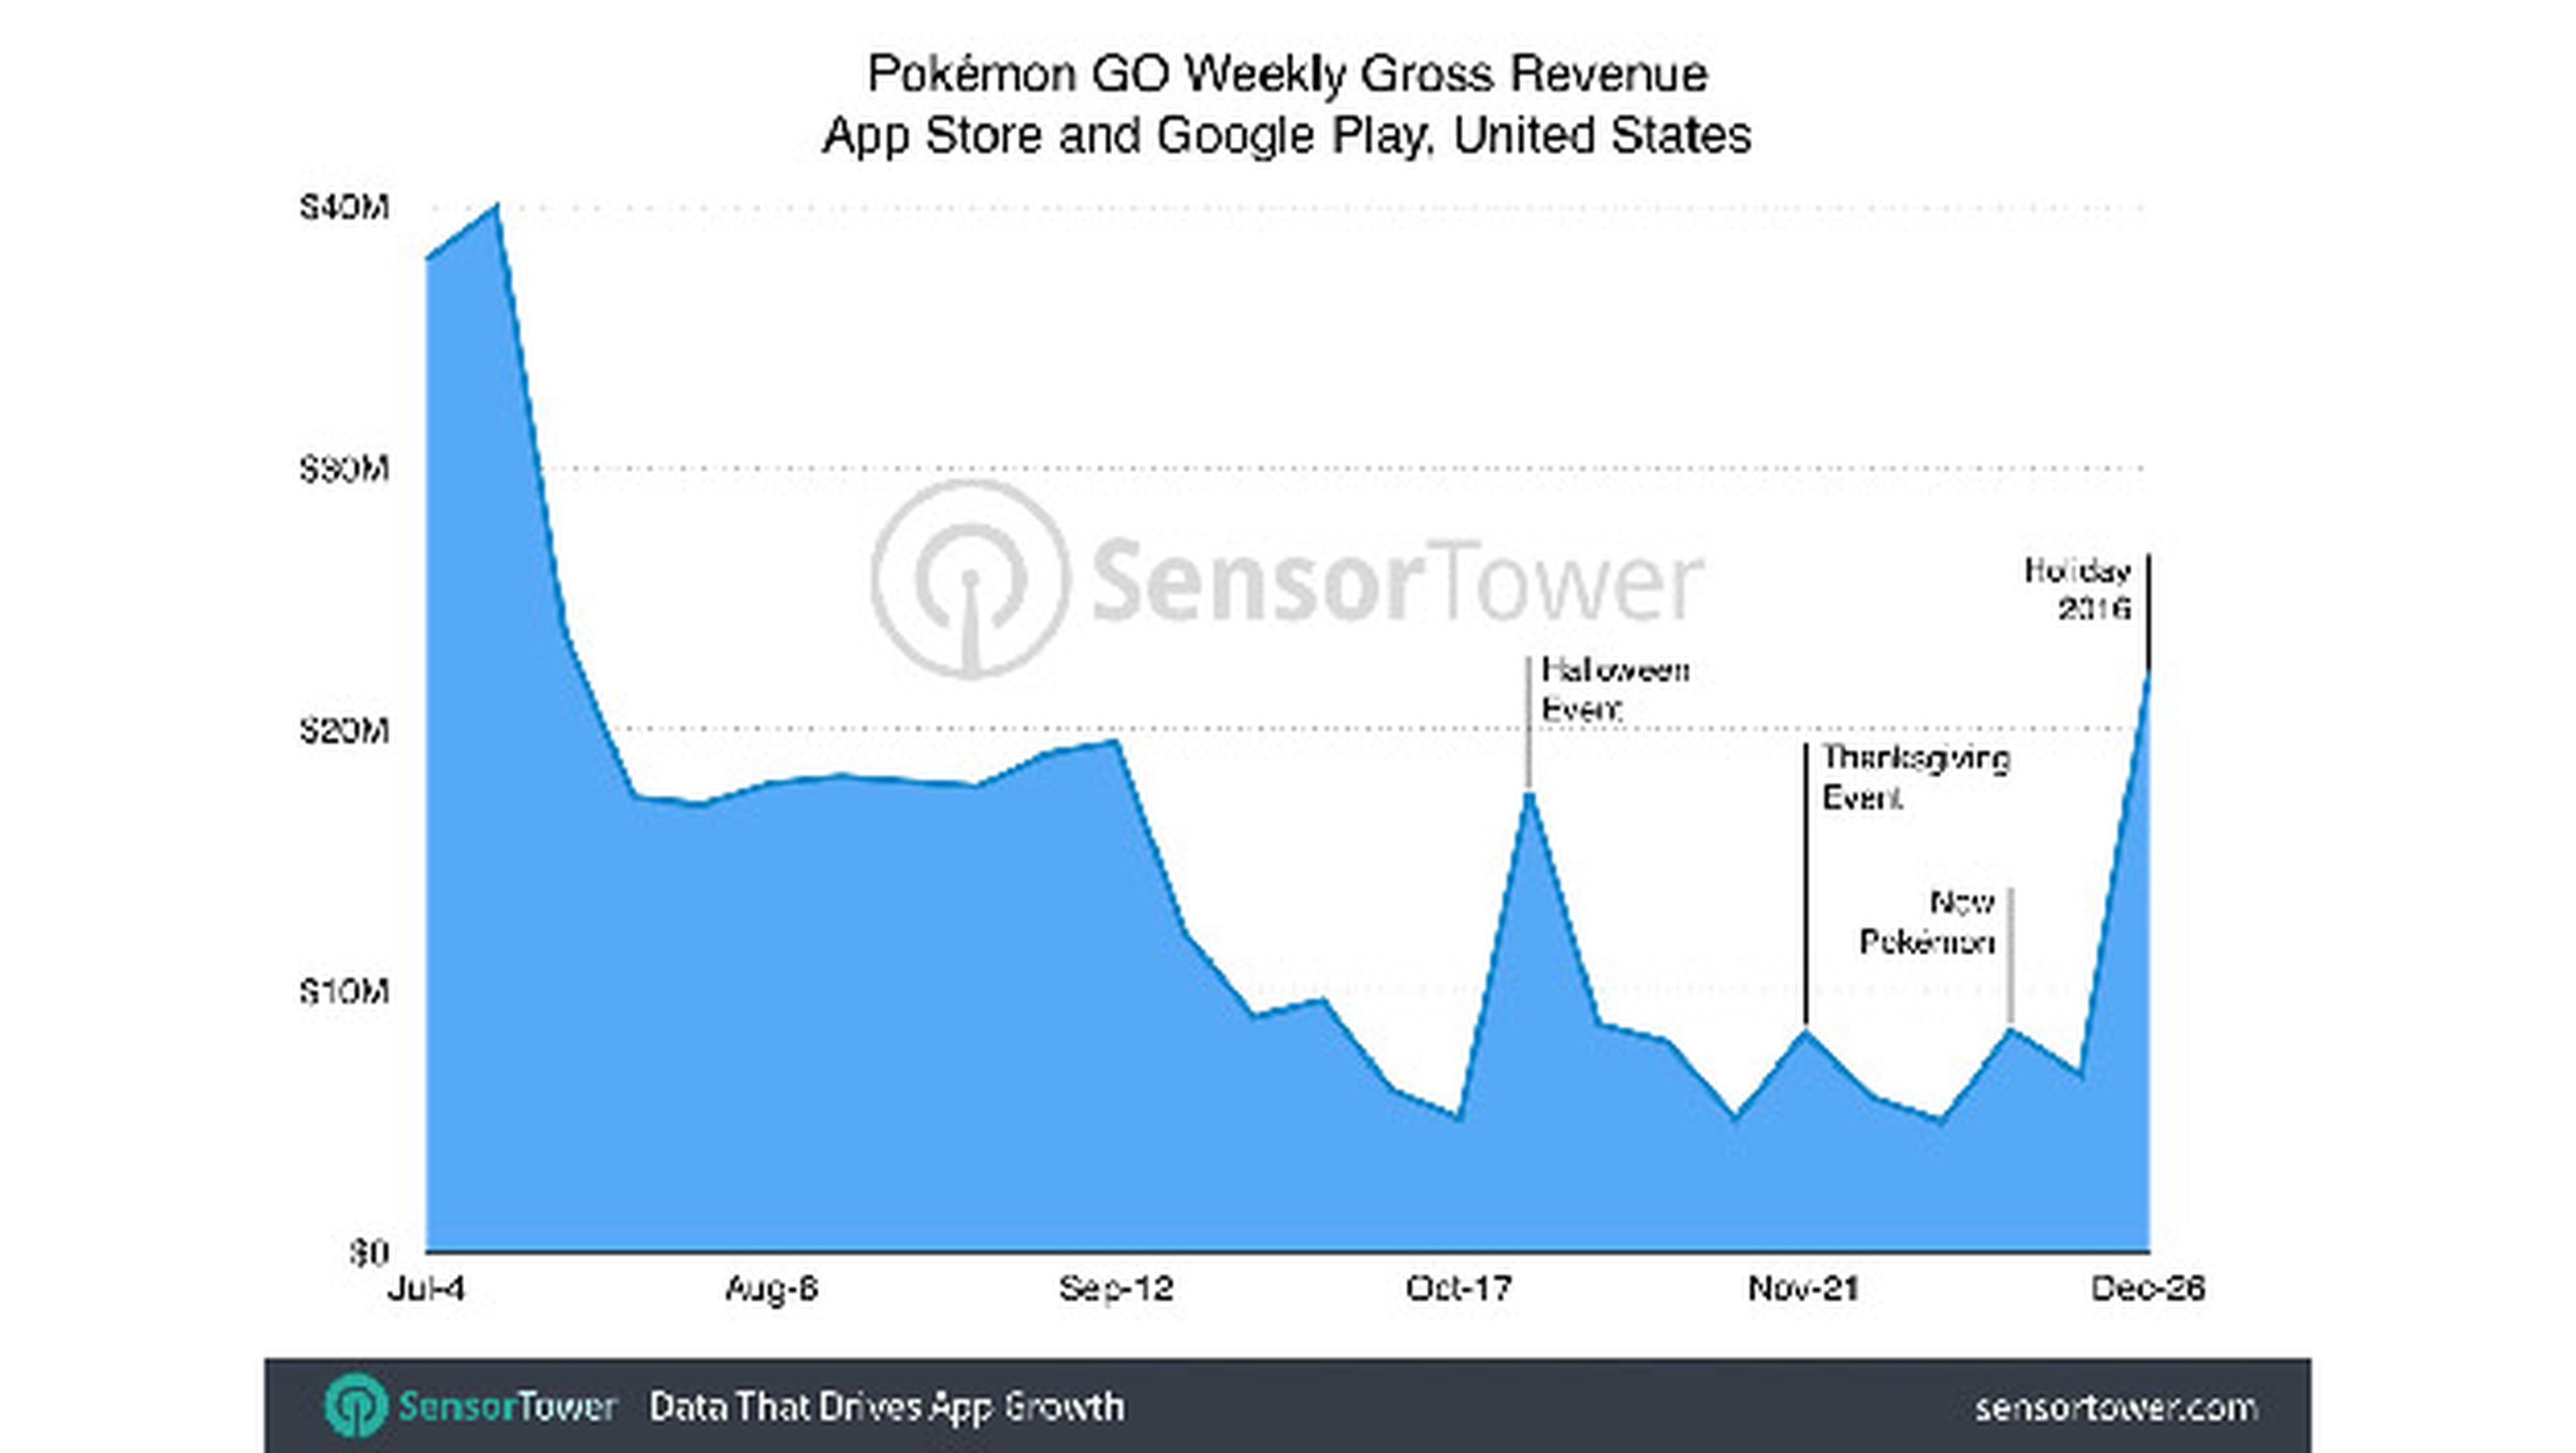 Los ingresos de Pokémon GO durante el 2016